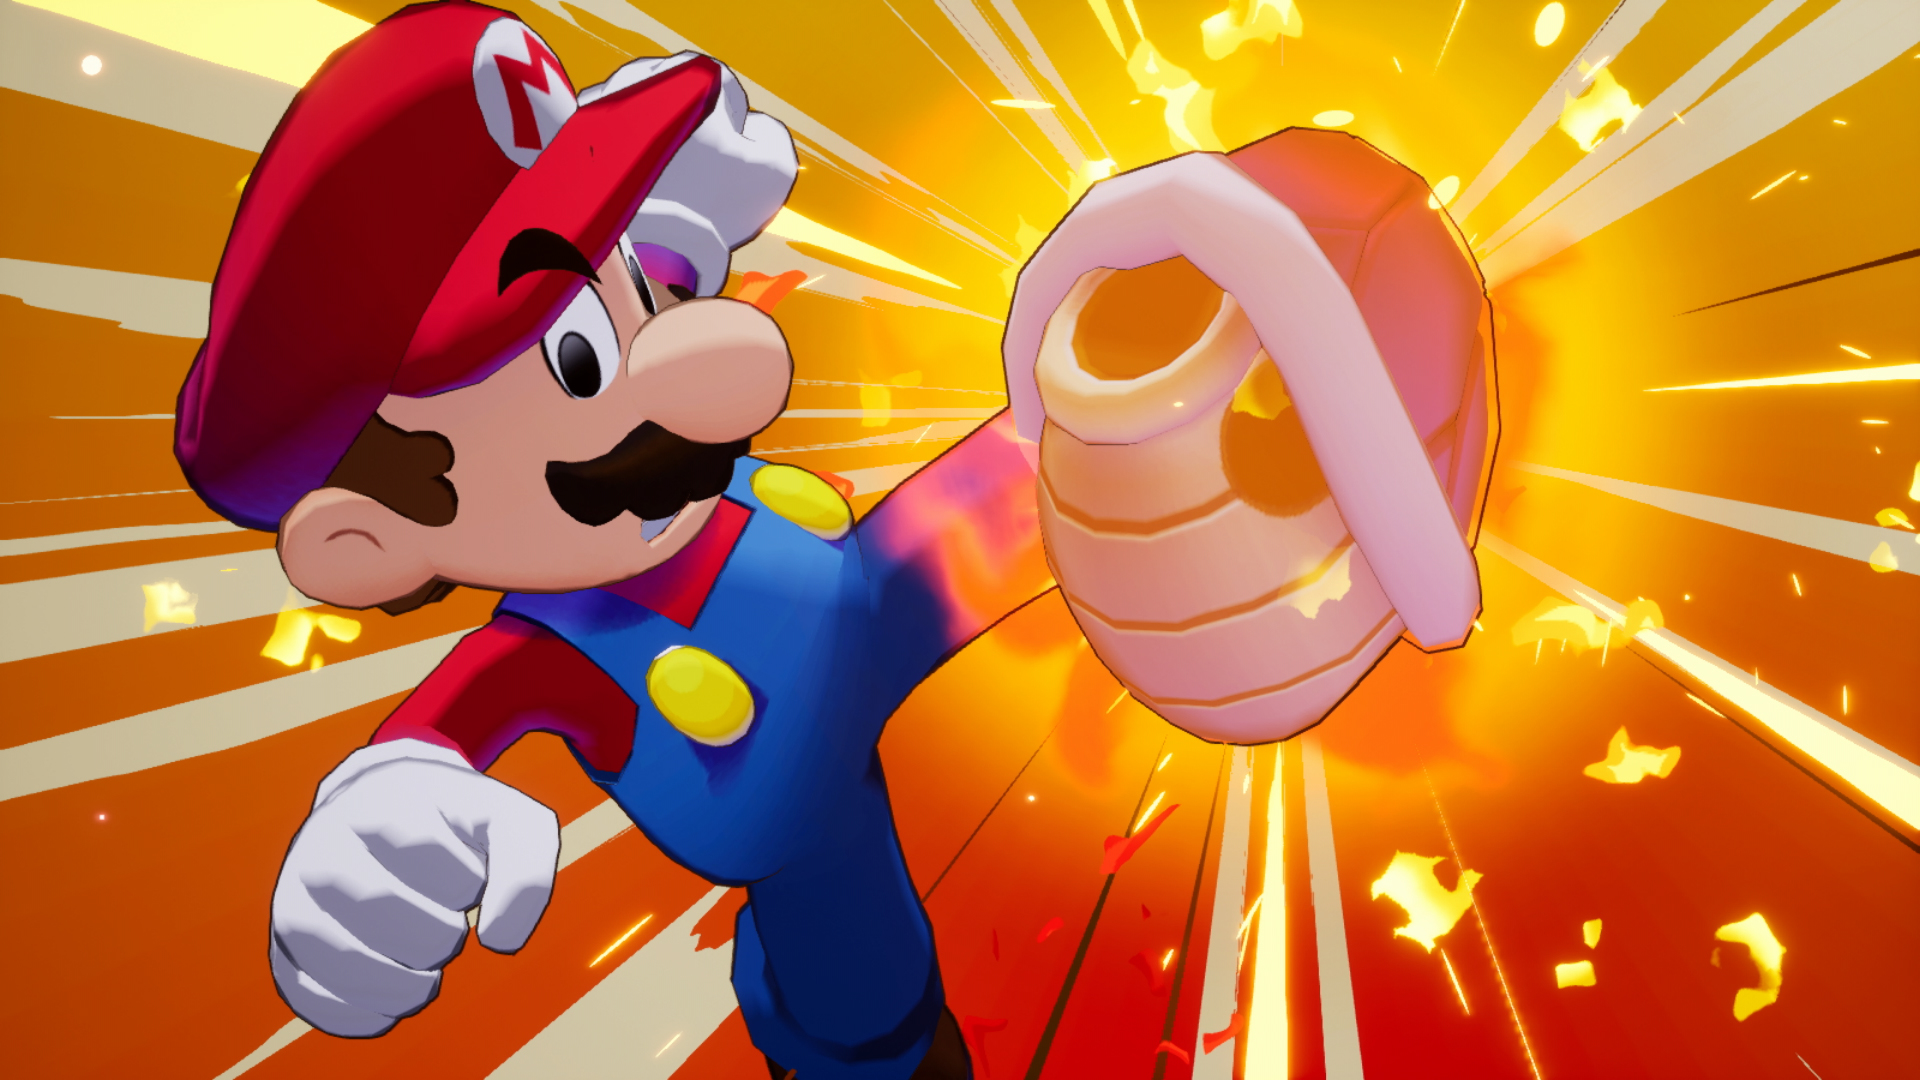 Mario et luigi l epopee fraternelle screenshot 9 9